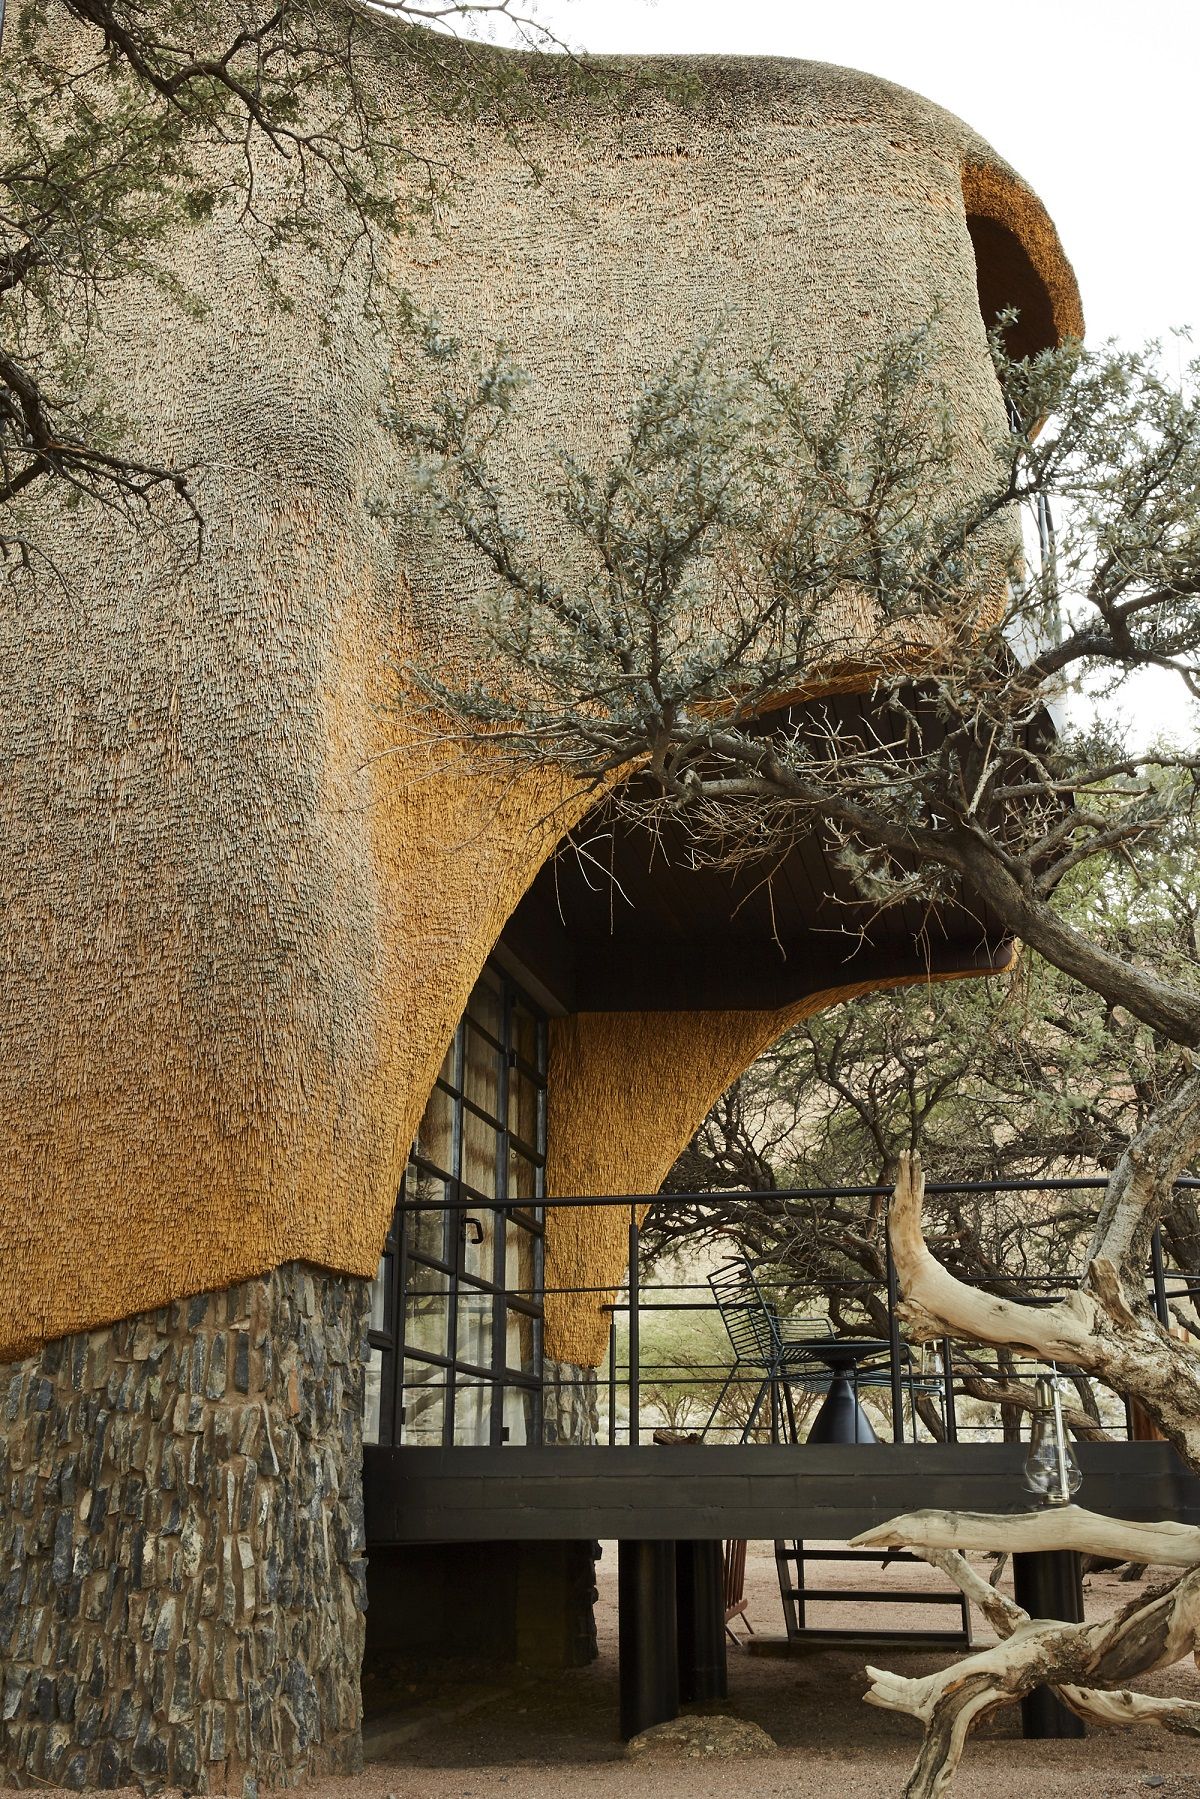 The Nest - Thiết kế khơi nguồn từ chiếc tổ chim ở Nambia